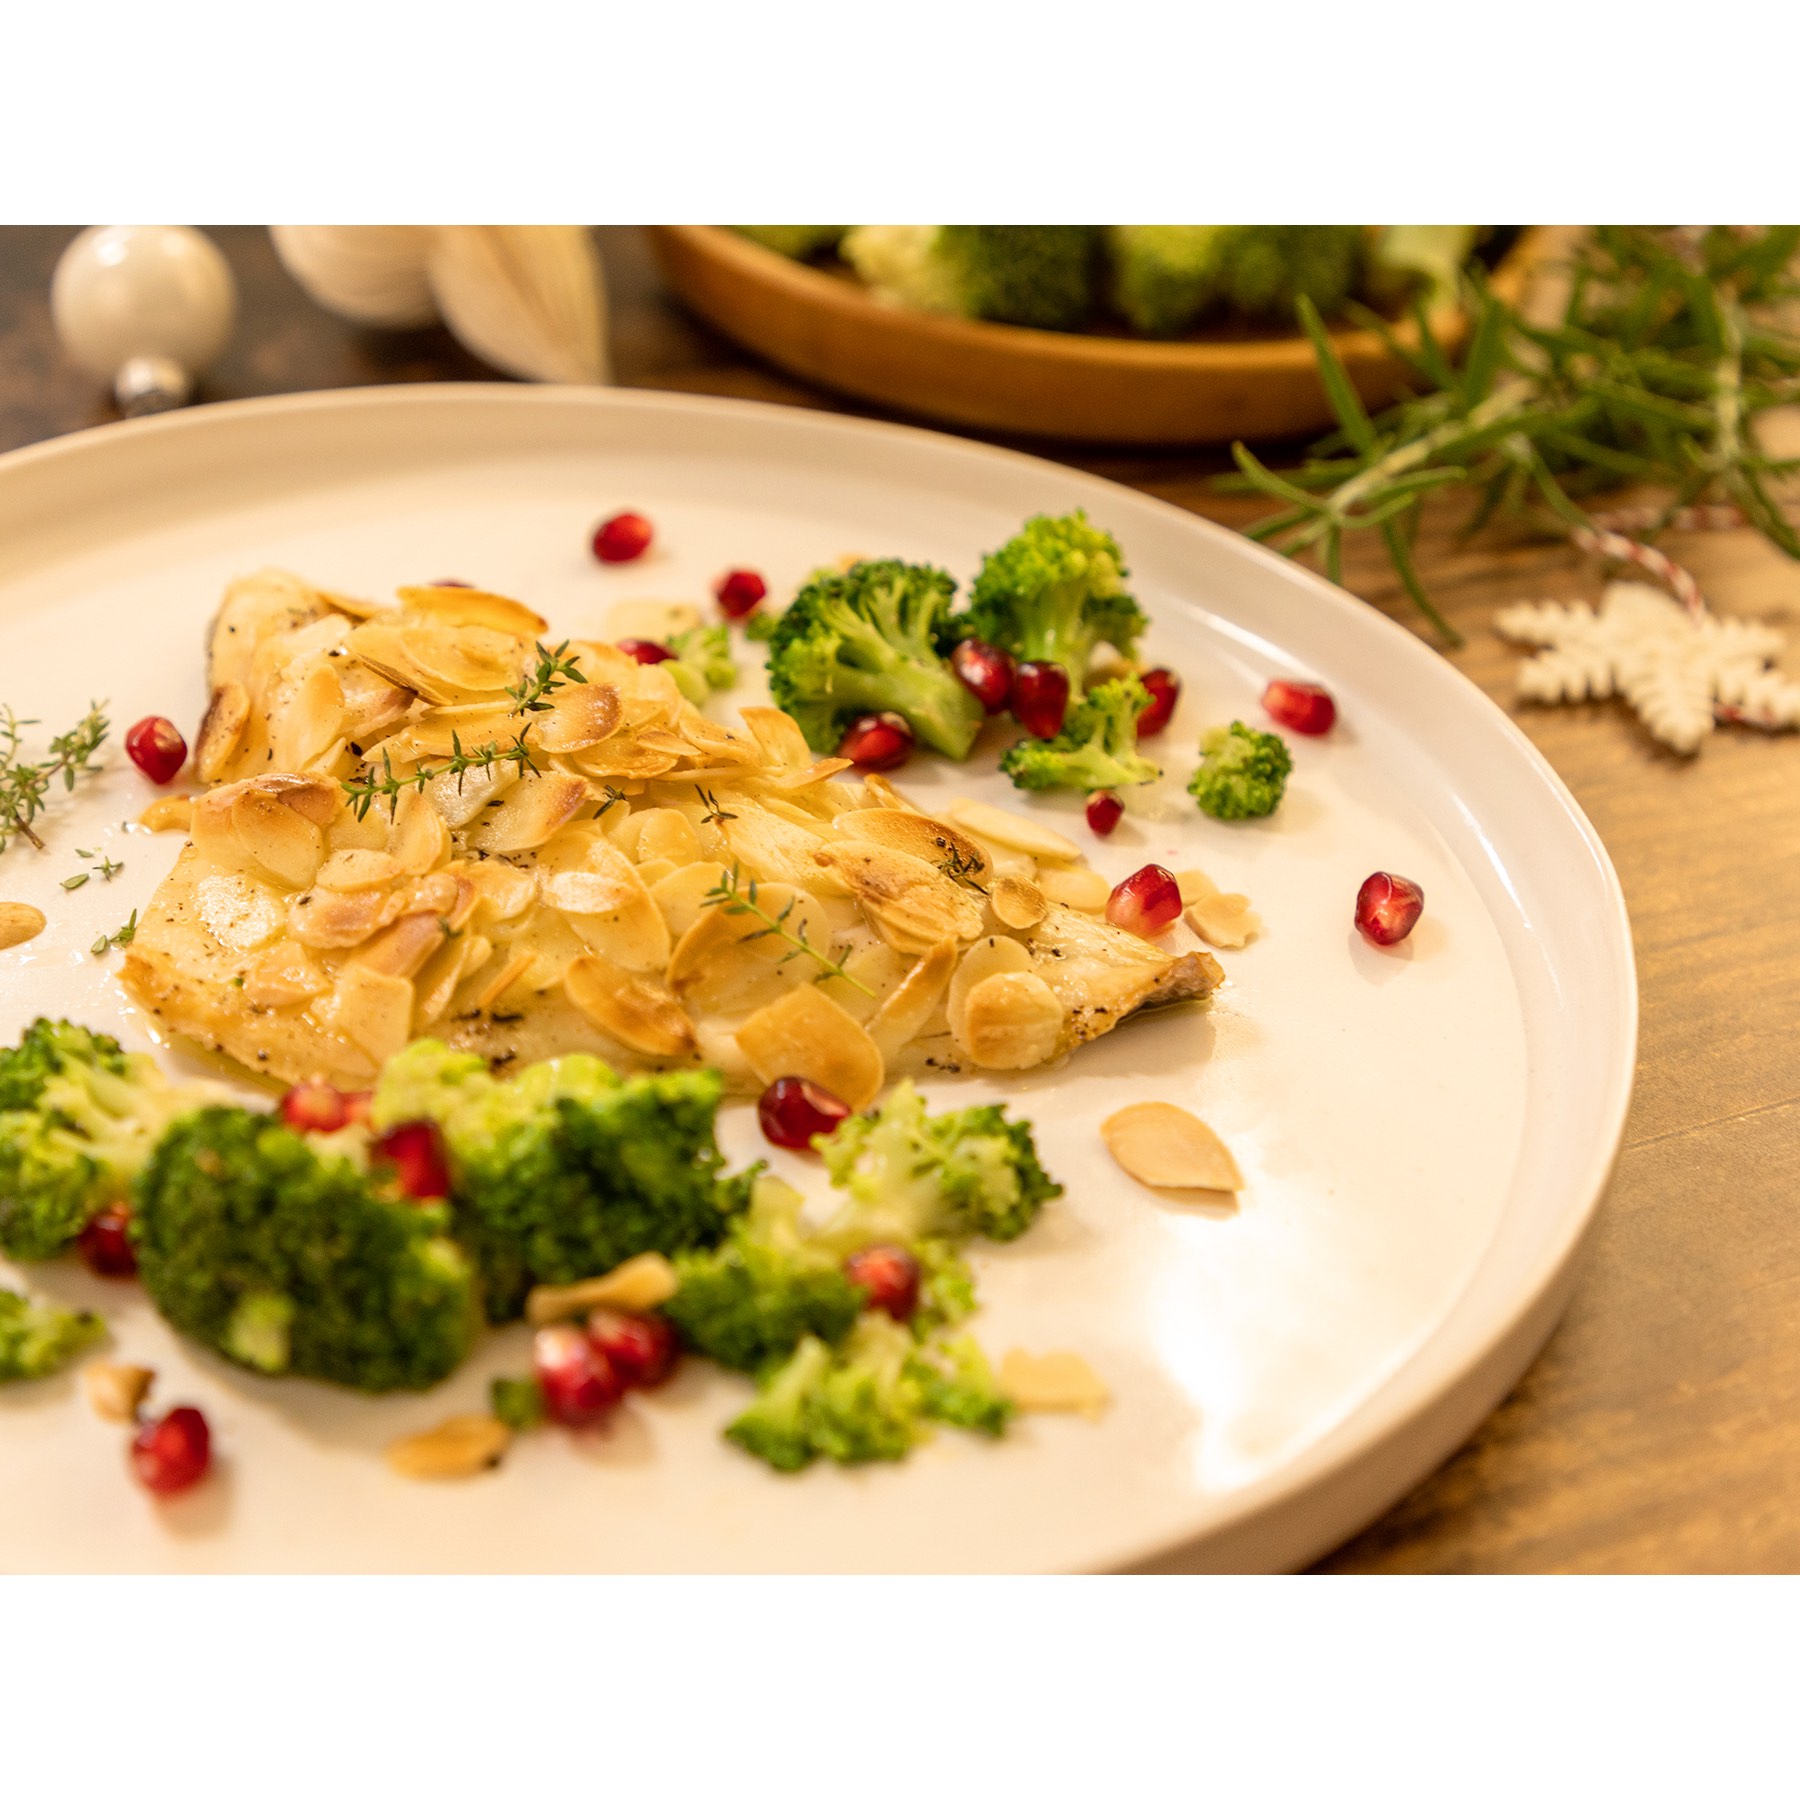 Foto 1 - Per un Natale elegante e gustoso, Fish from Greece propone una ricetta a base di pesce fresco greco, mandorle e melagrana,  perfetta per il menù delle feste